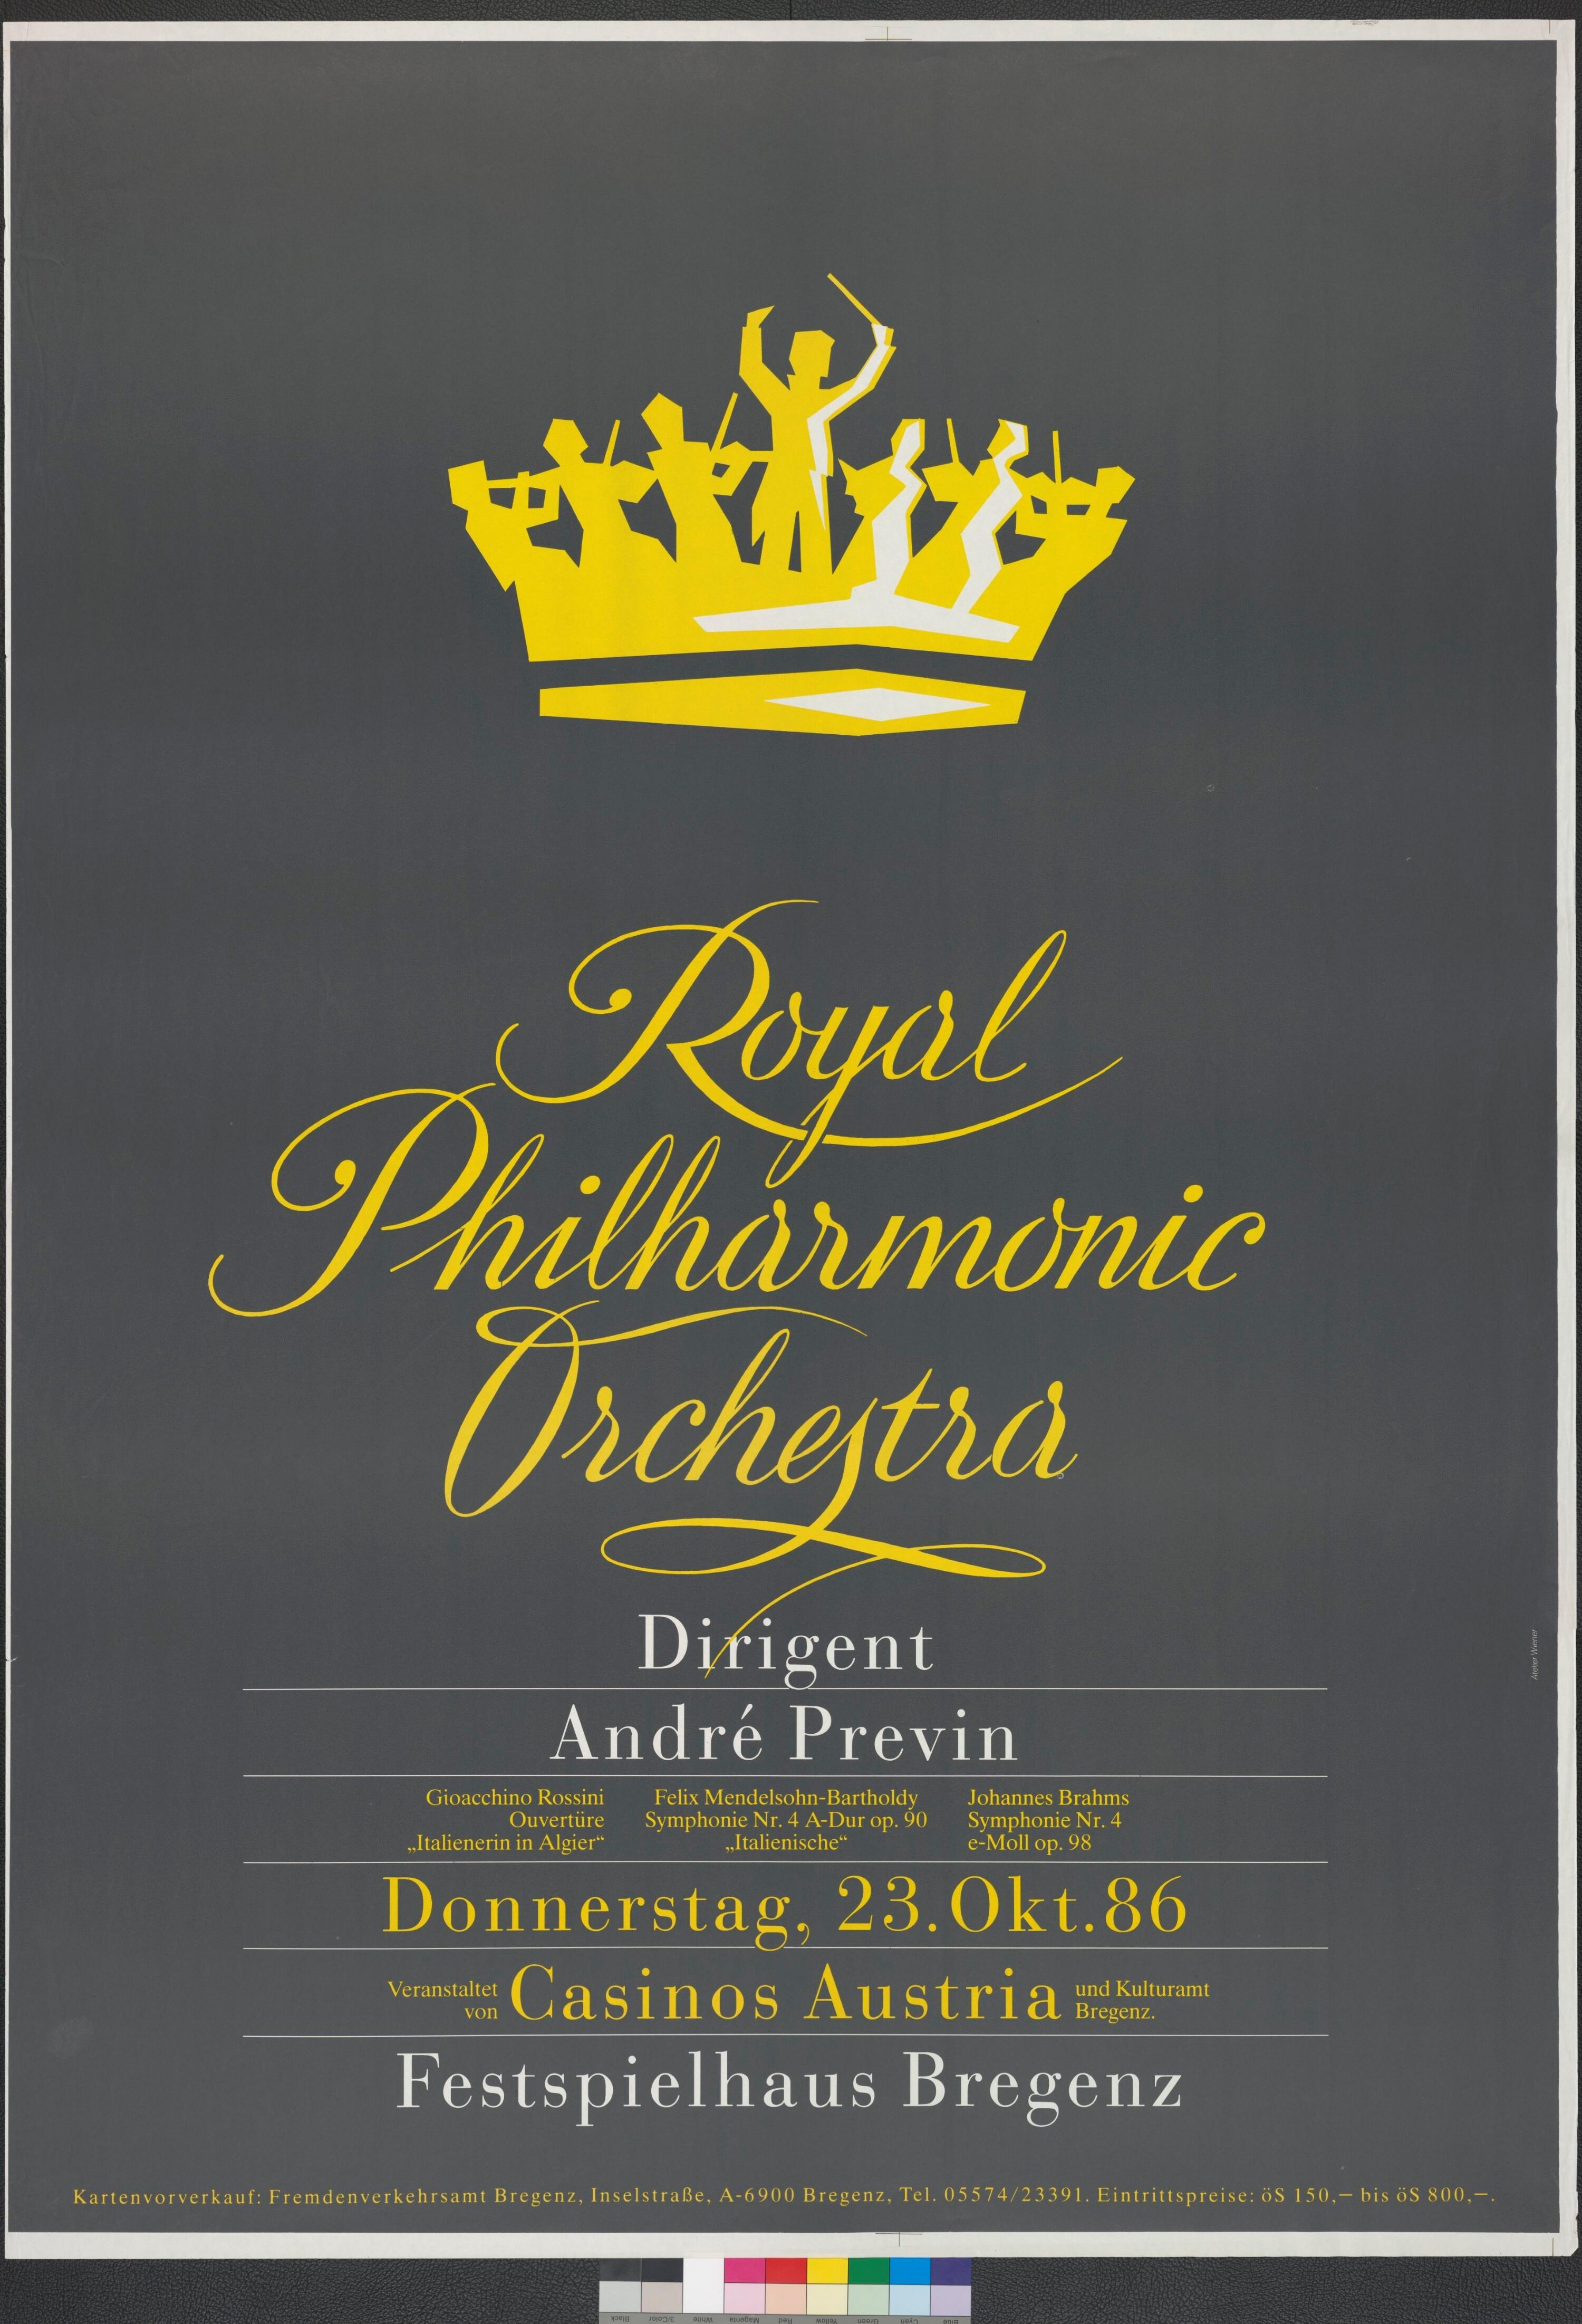 Plakat für Konzert im Festspielhaus Bregenz></div>


    <hr>
    <div class=